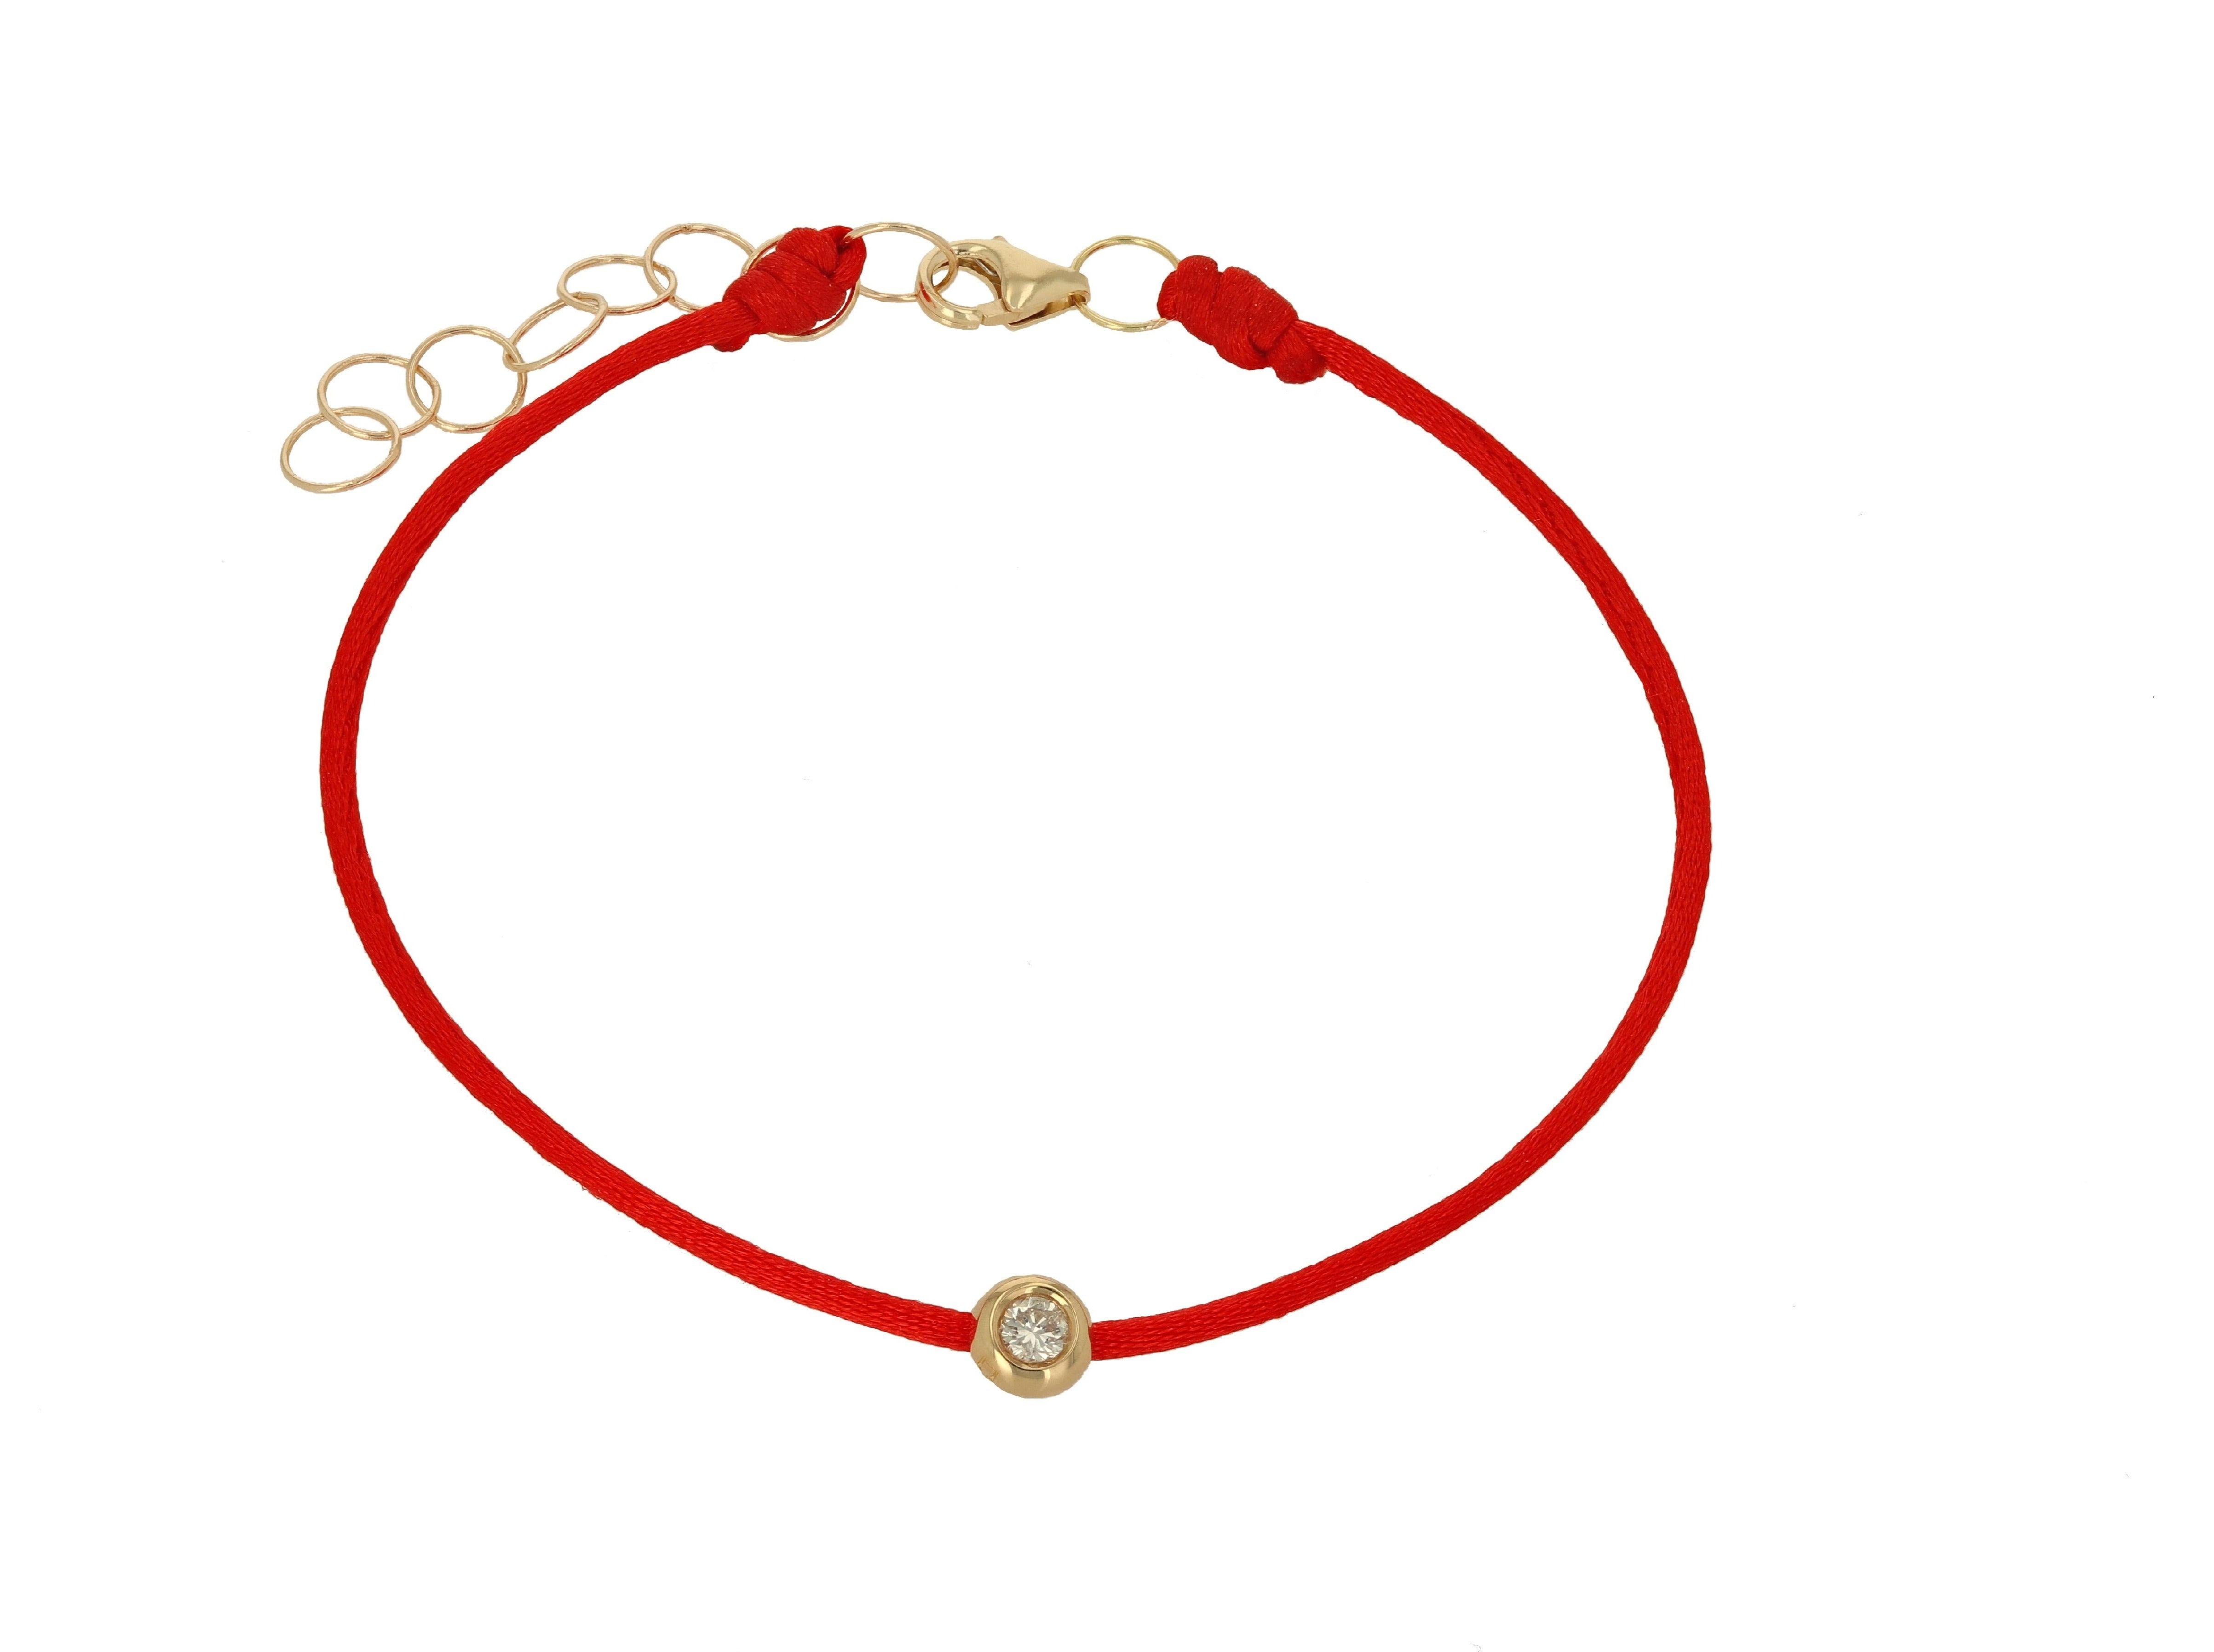 Diamond and Red String Bracelet - Rachel Reid